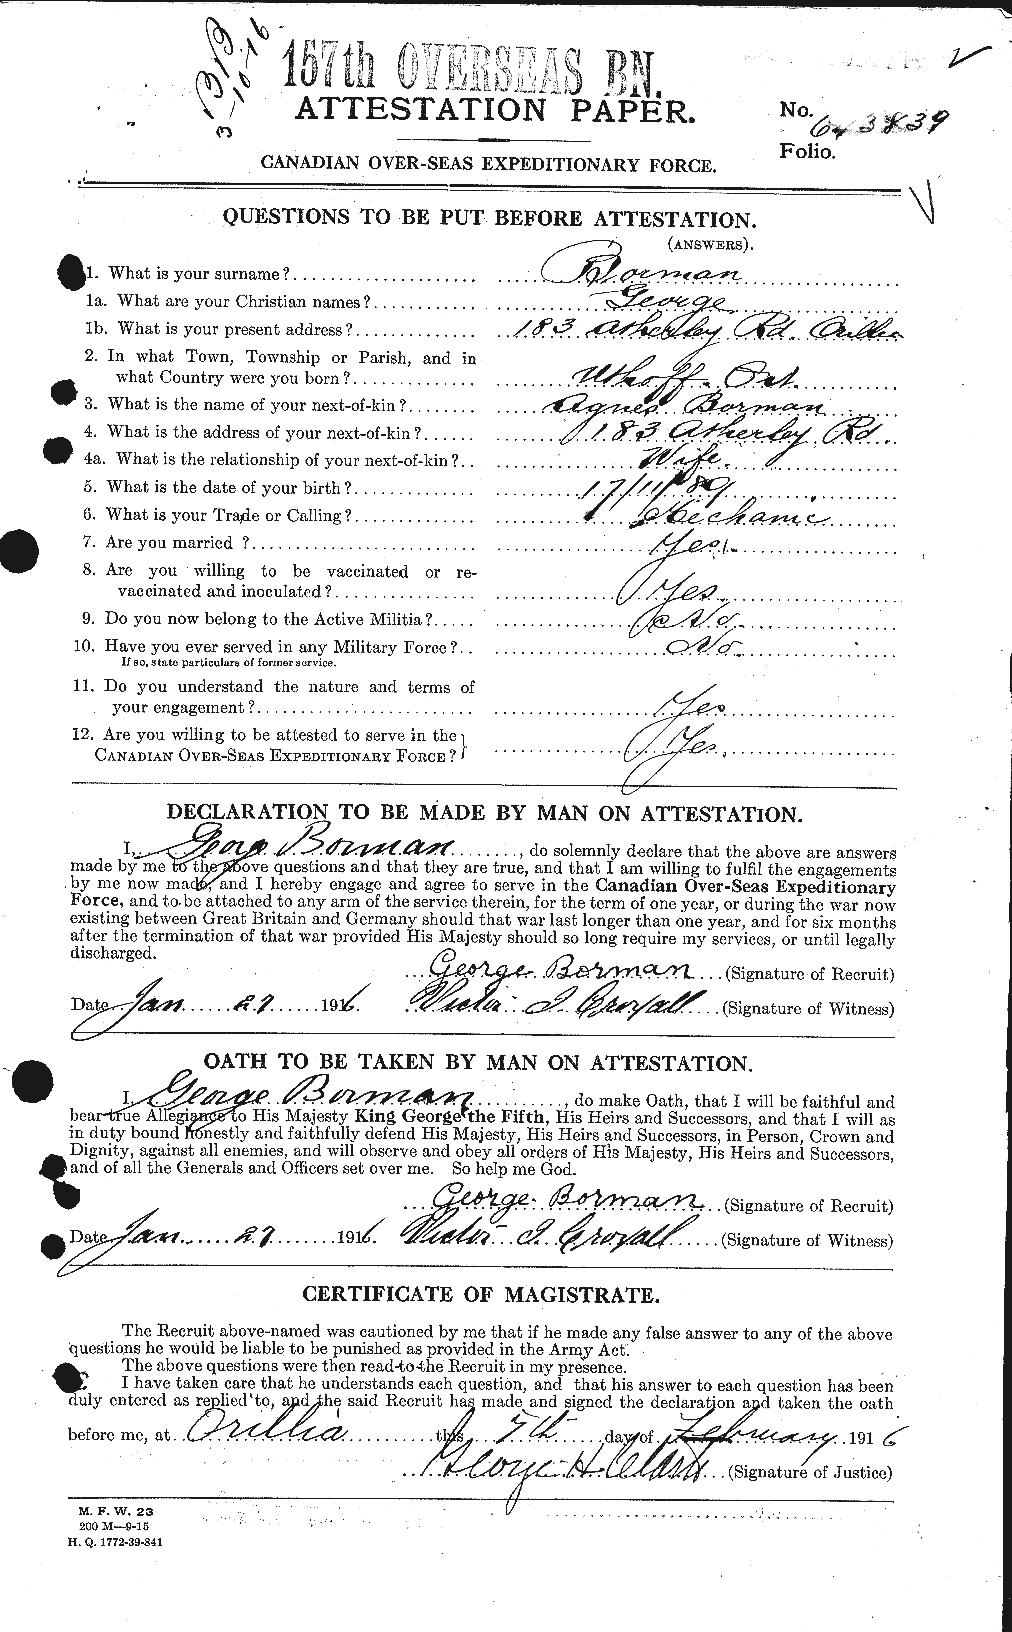 Dossiers du Personnel de la Première Guerre mondiale - CEC 252476a